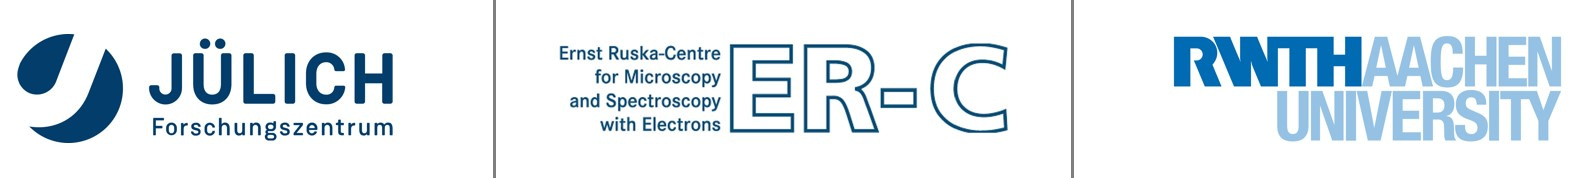 Logo for er-c